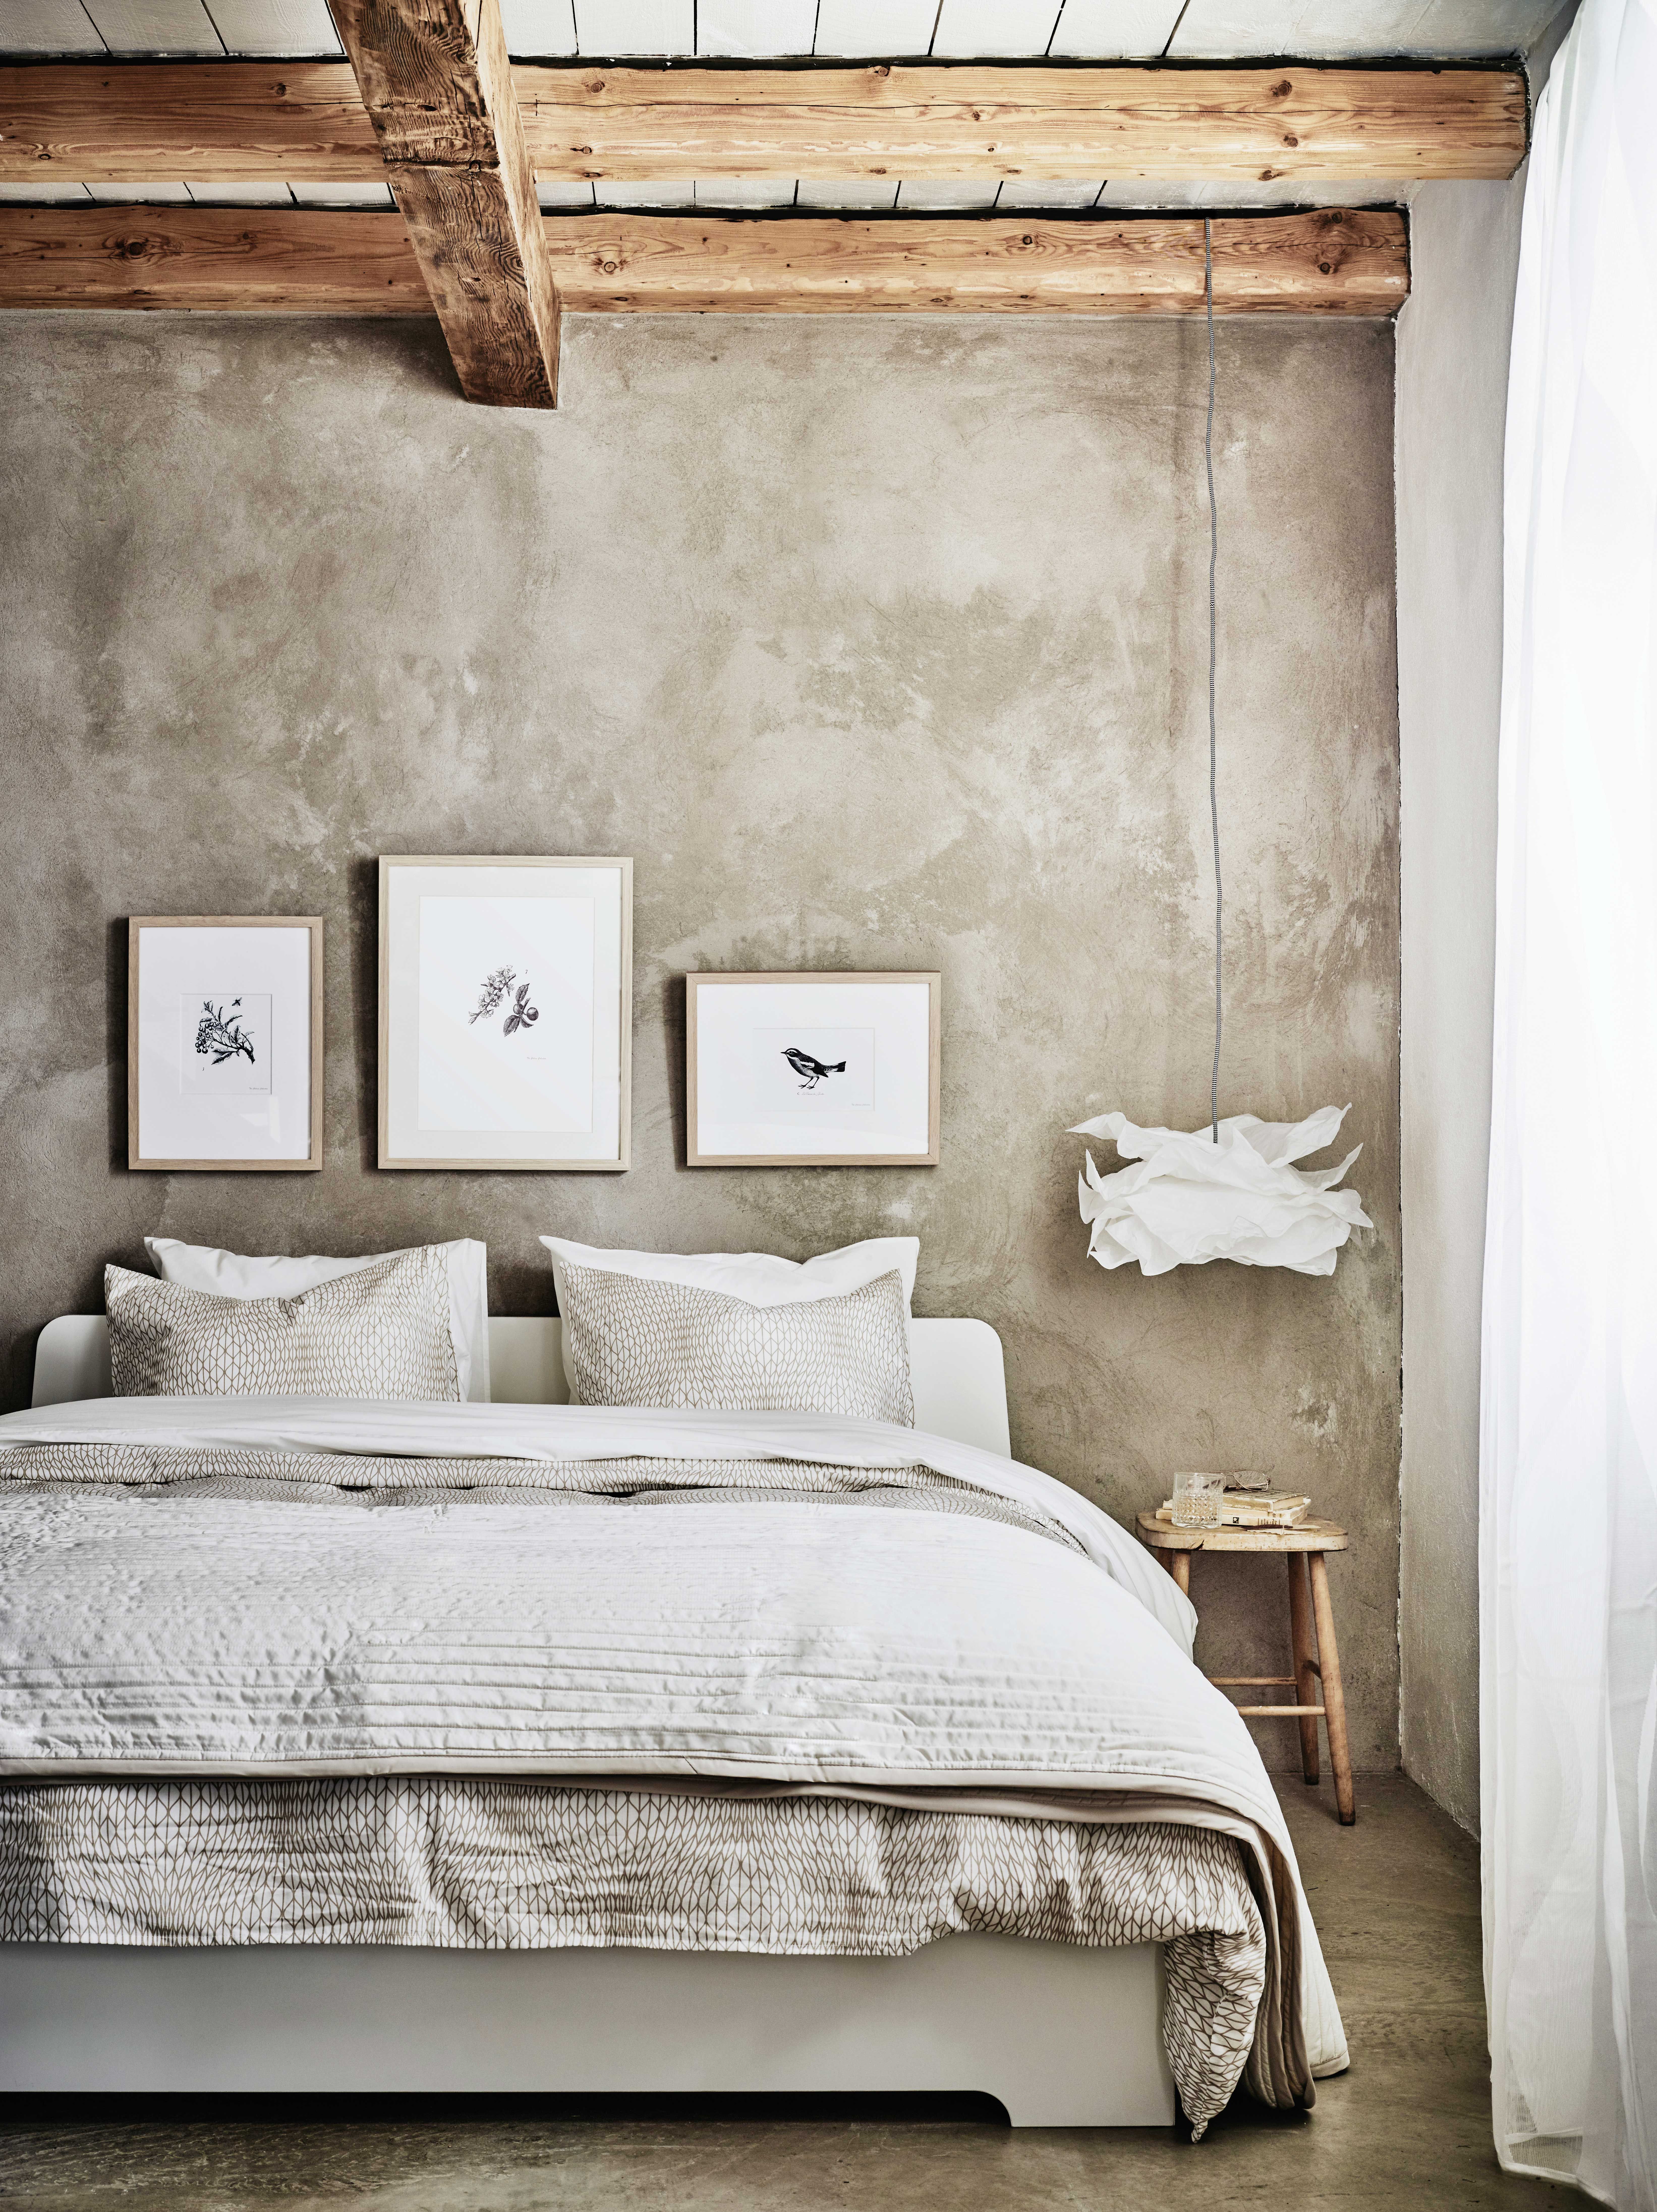 Cabeceros de cama originales - Ideas para decorar dormitorios